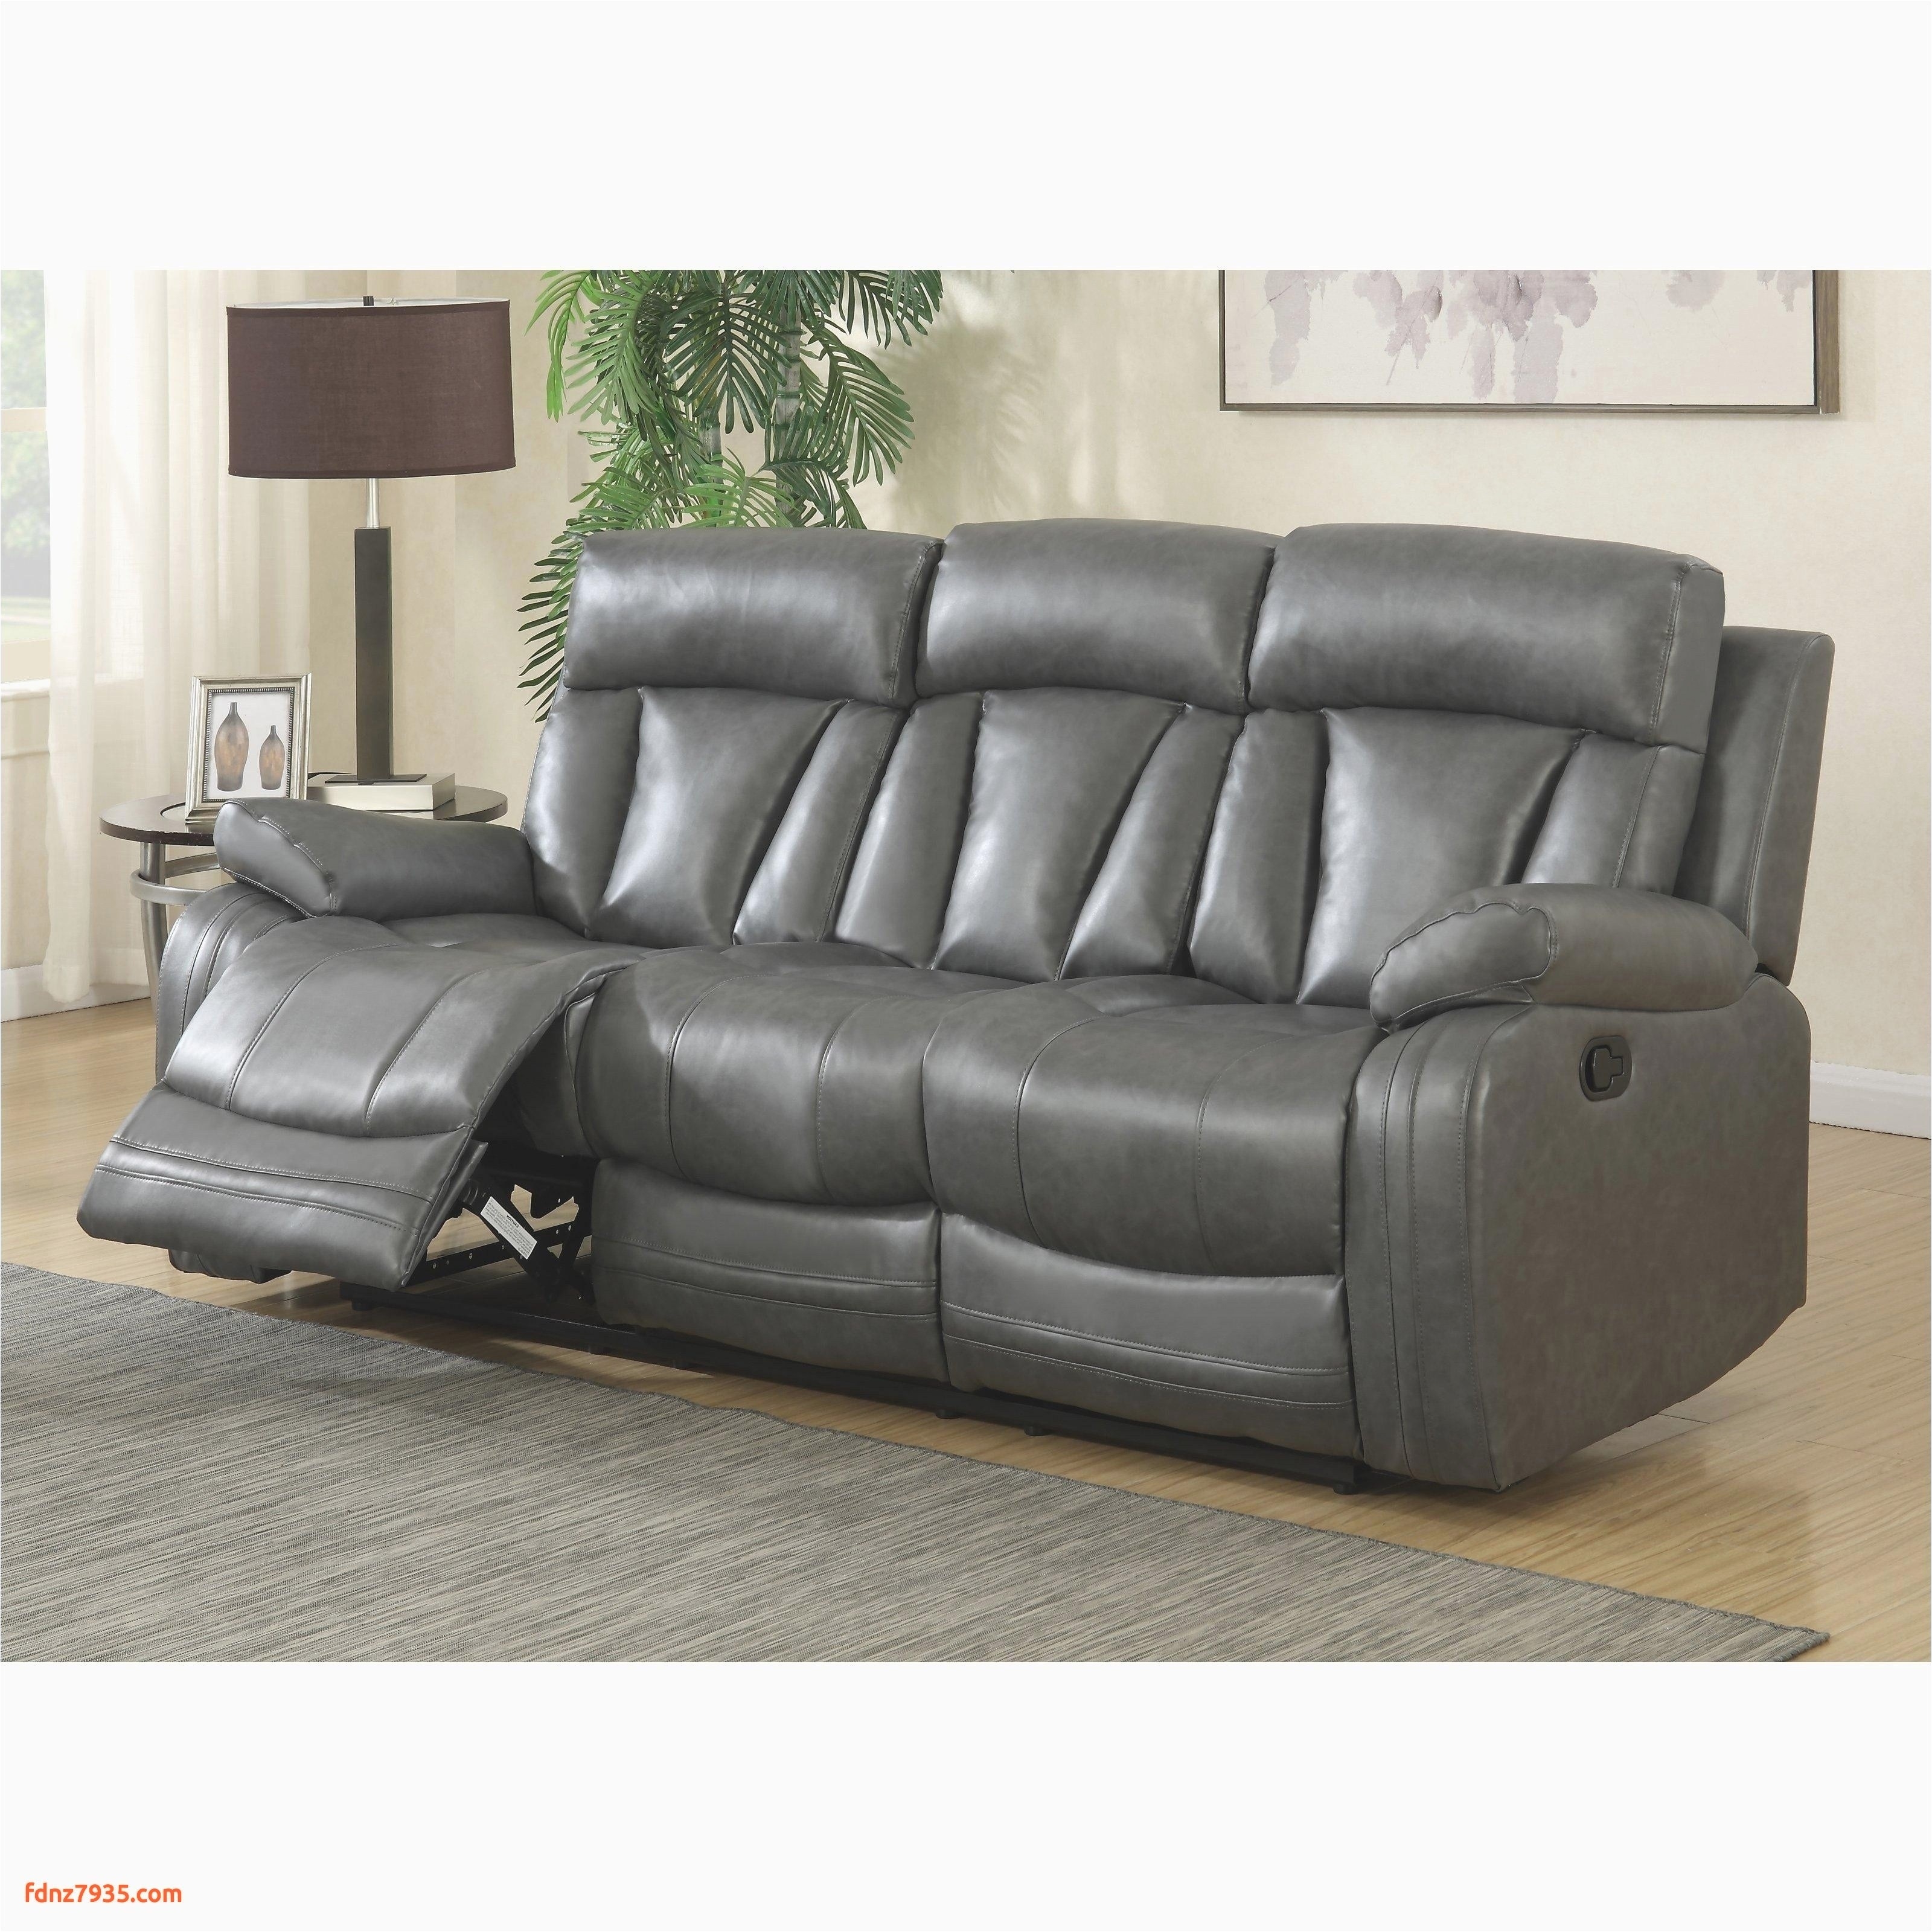 power reclining sofa and loveseat beautiful furniture gray reclining loveseat best tufted loveseat 0d 6472